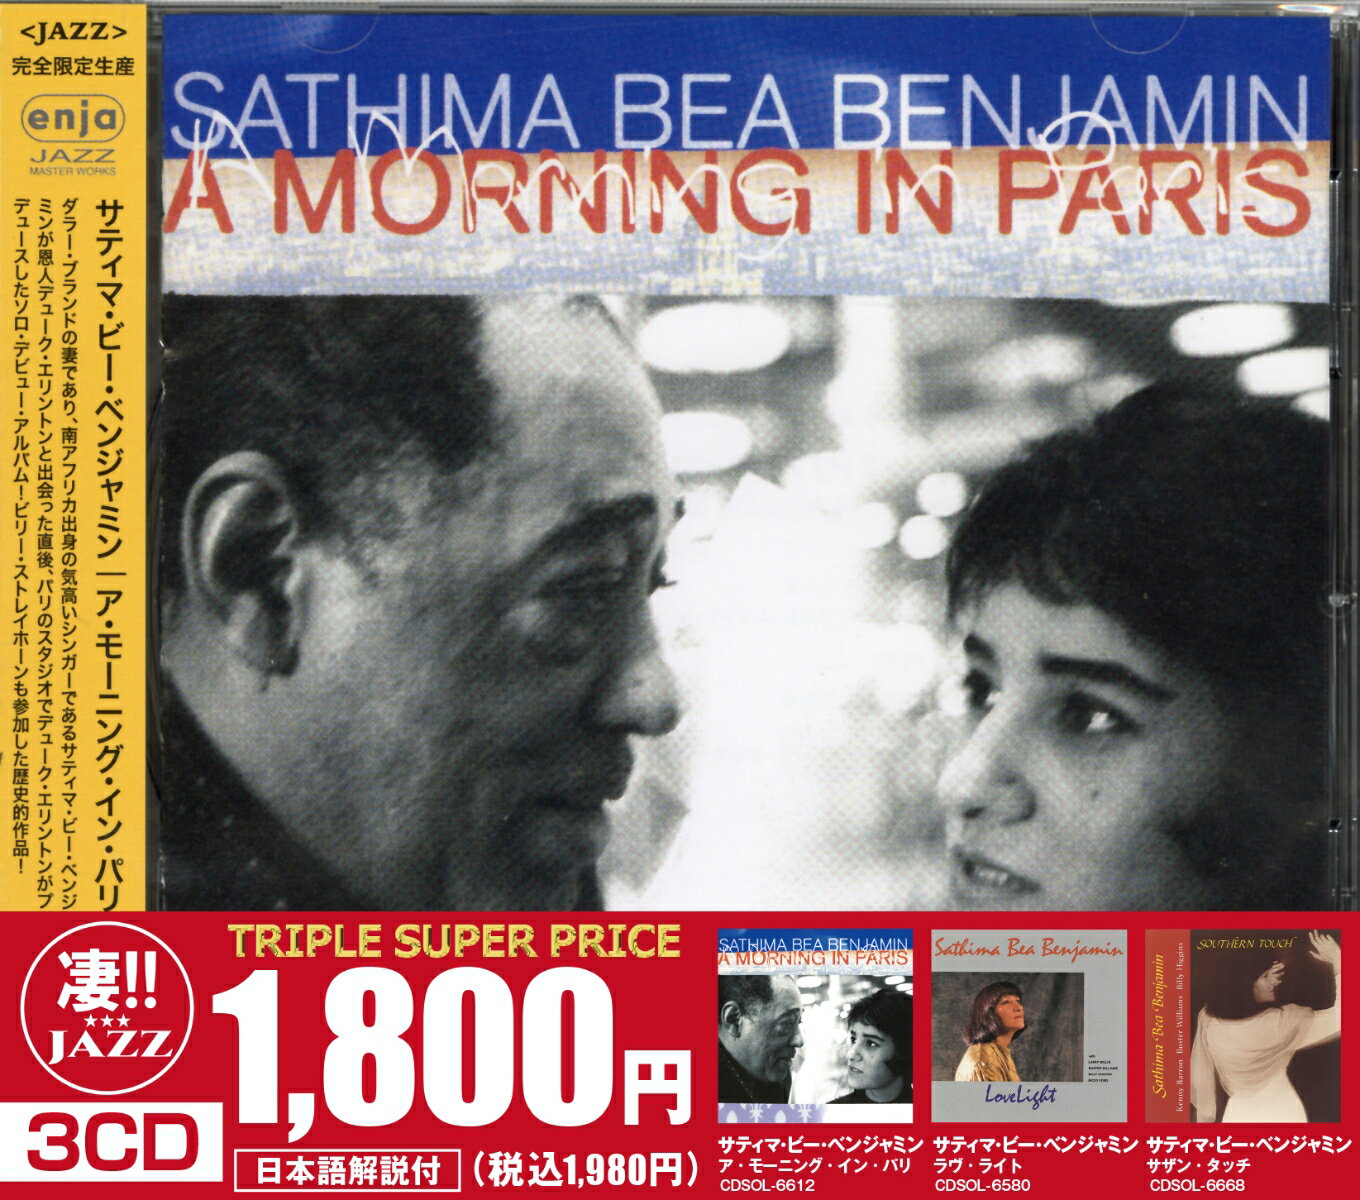 このジャズが凄い!!〜サティマ・ビー・ベンジャミン『ア・モーニング・イン・パリ』『ラヴ・ライト』『サザン・タッチ』